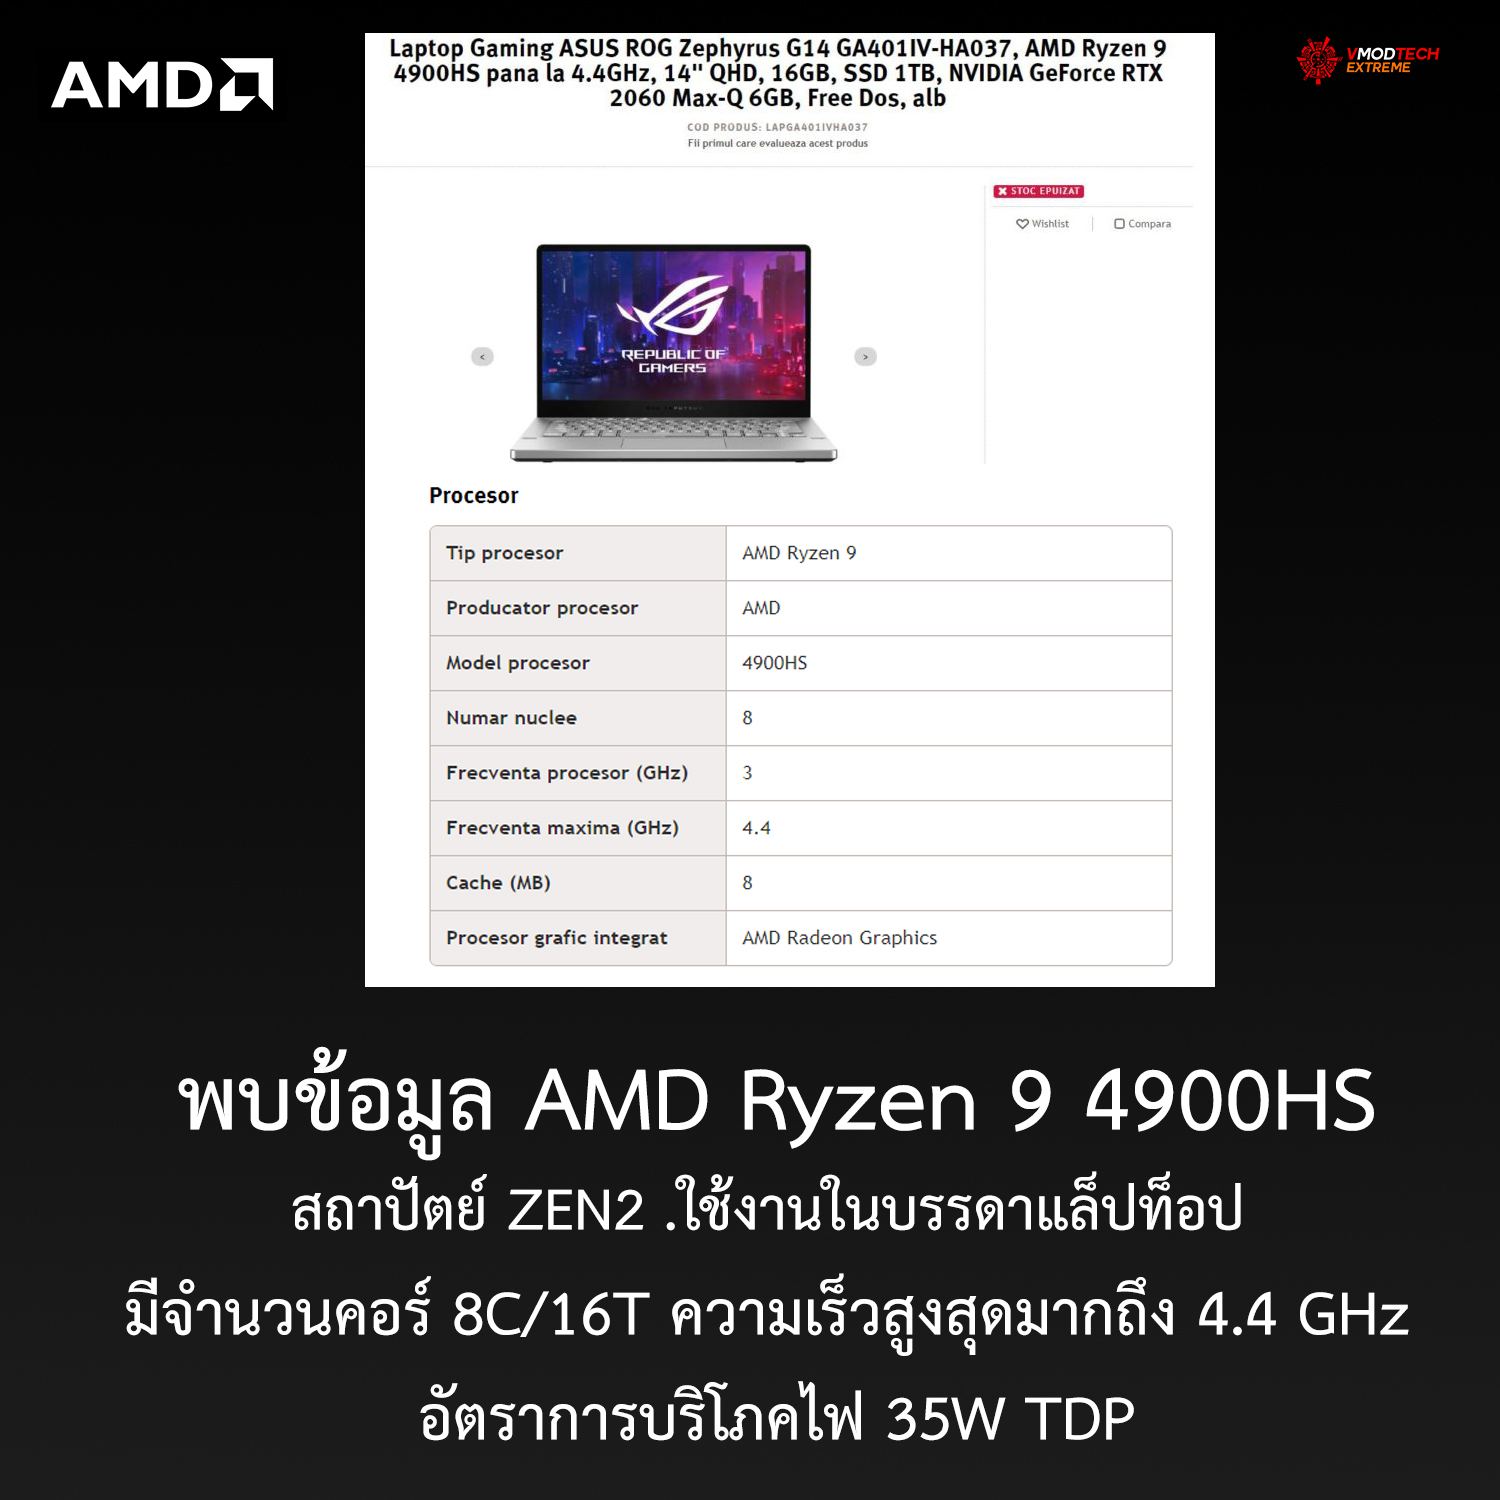 พบข้อมูล AMD Ryzen 9 4900HS มีจำนวนคอร์ 8C/16T ความเร็วสูงสุดมากถึง 4.4 GHz กันเลยทีเดียว